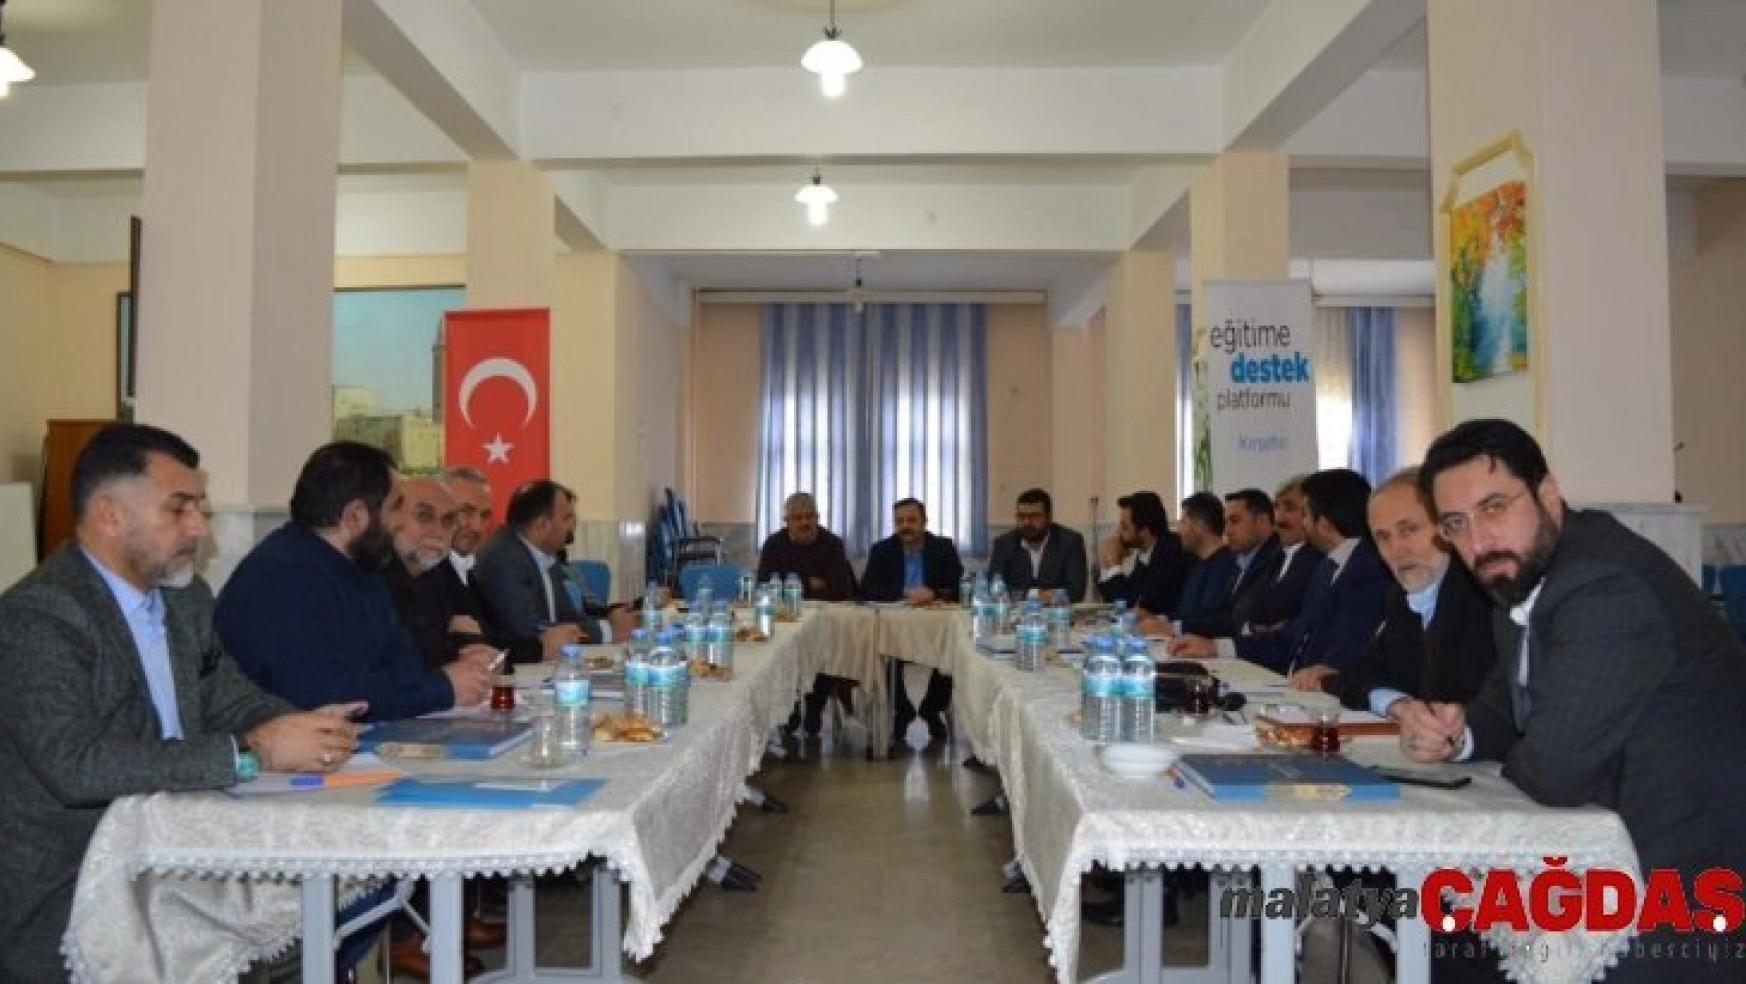 Eğitime Destek Platformu İç Anadolu Bölge Toplantısı yapıldı